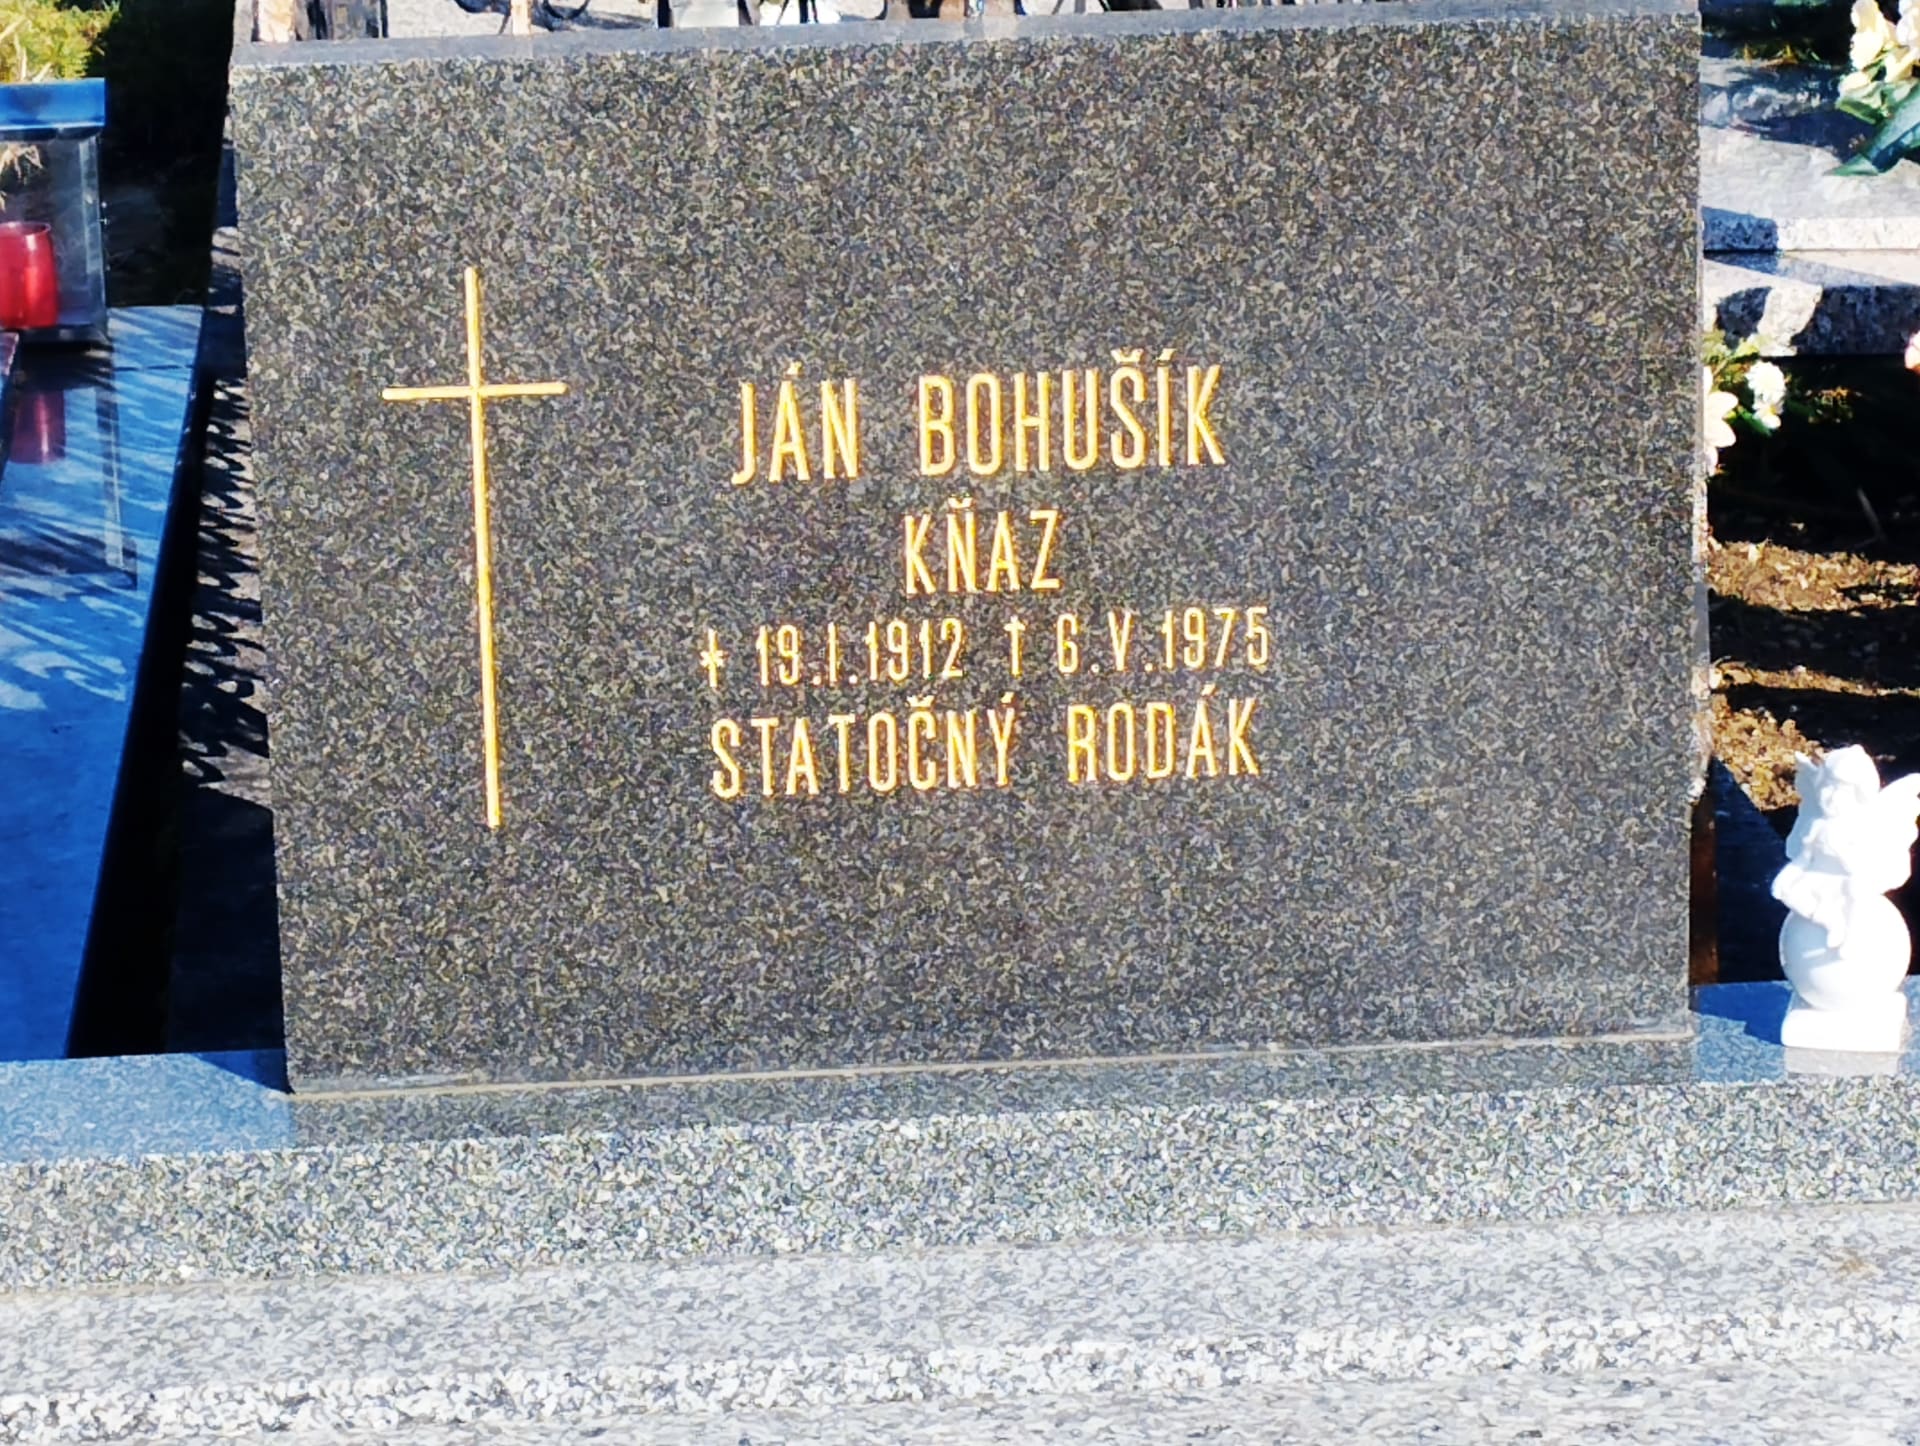 Hrob statečného kněze, který sousedí s hrobem Jána Kuciaka.